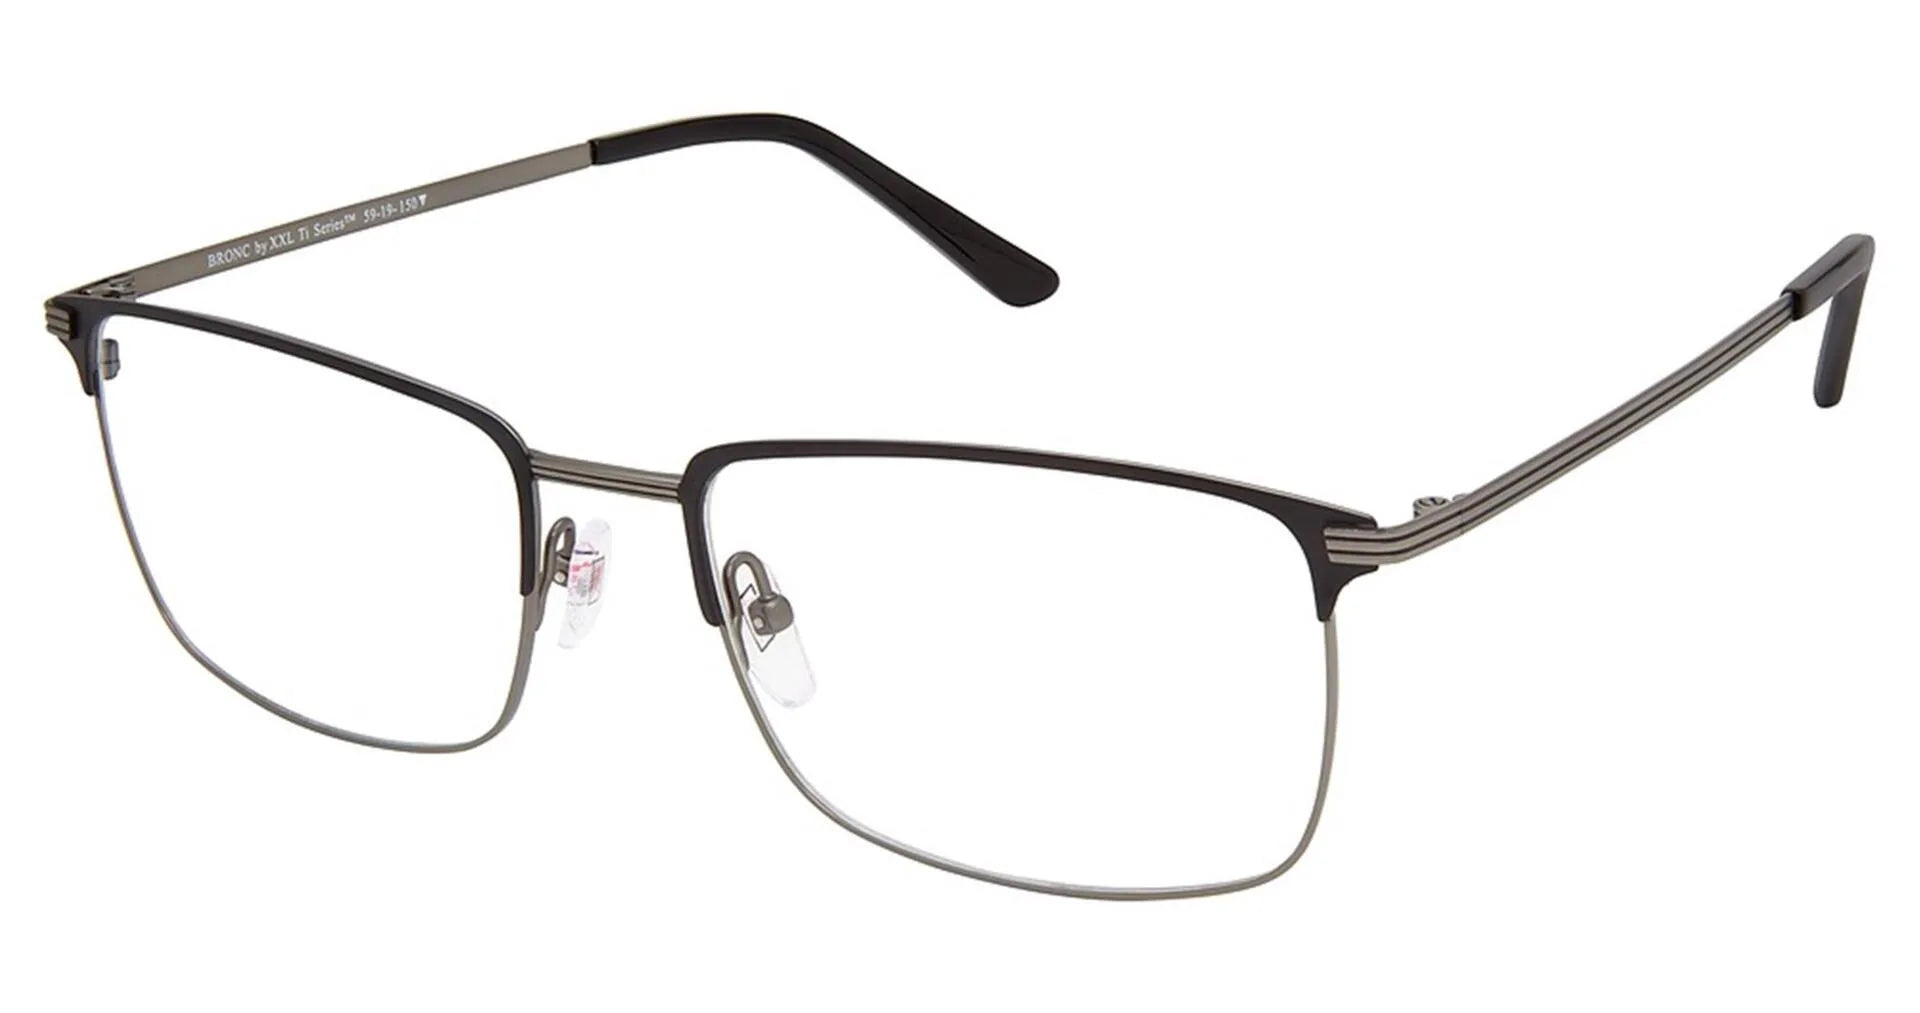 XXL Eyewear Bronc Eyeglasses Black